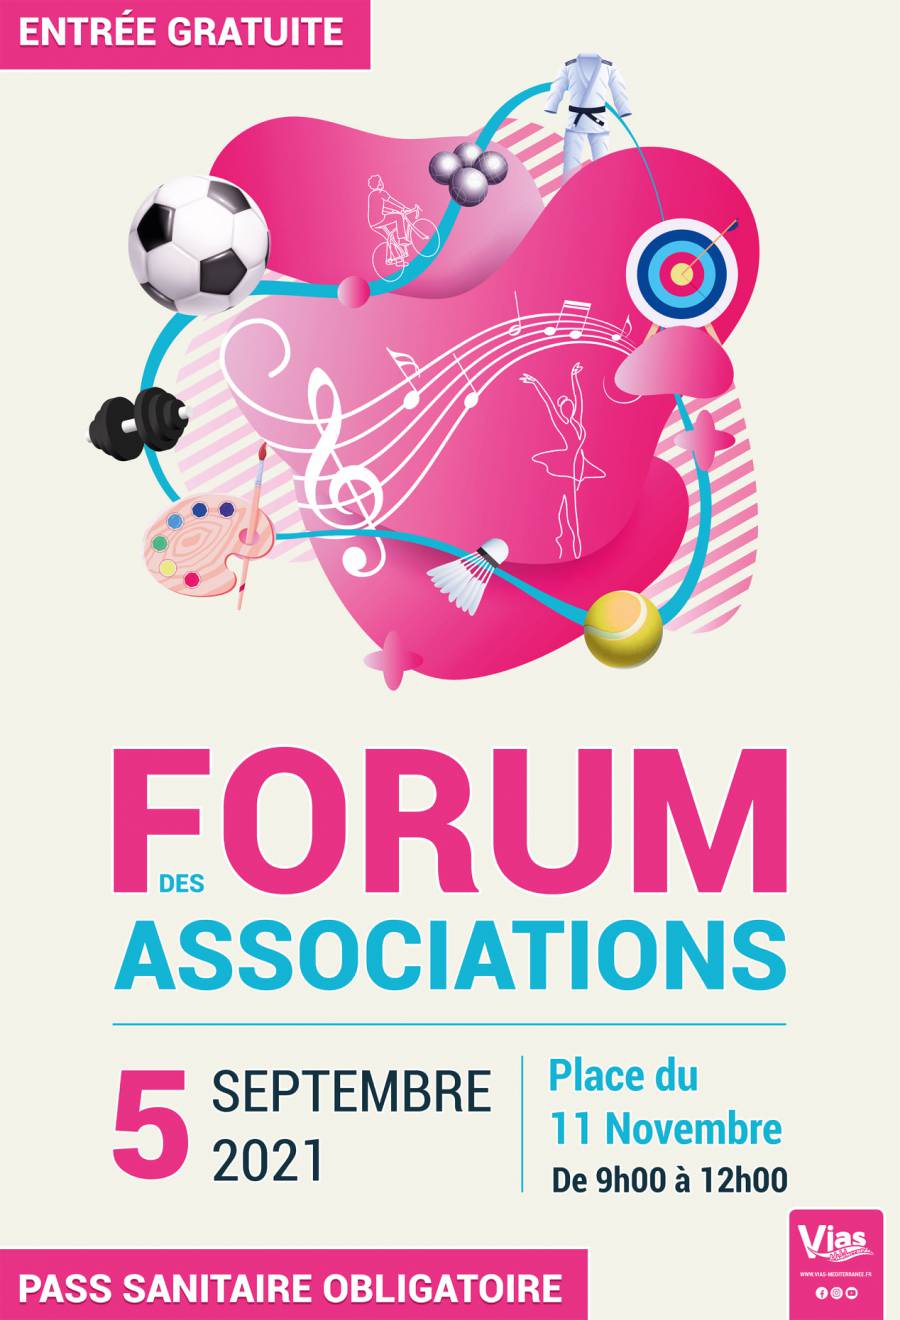 Vias - Le Forum des associations se déroulera dimanche 5 septembre